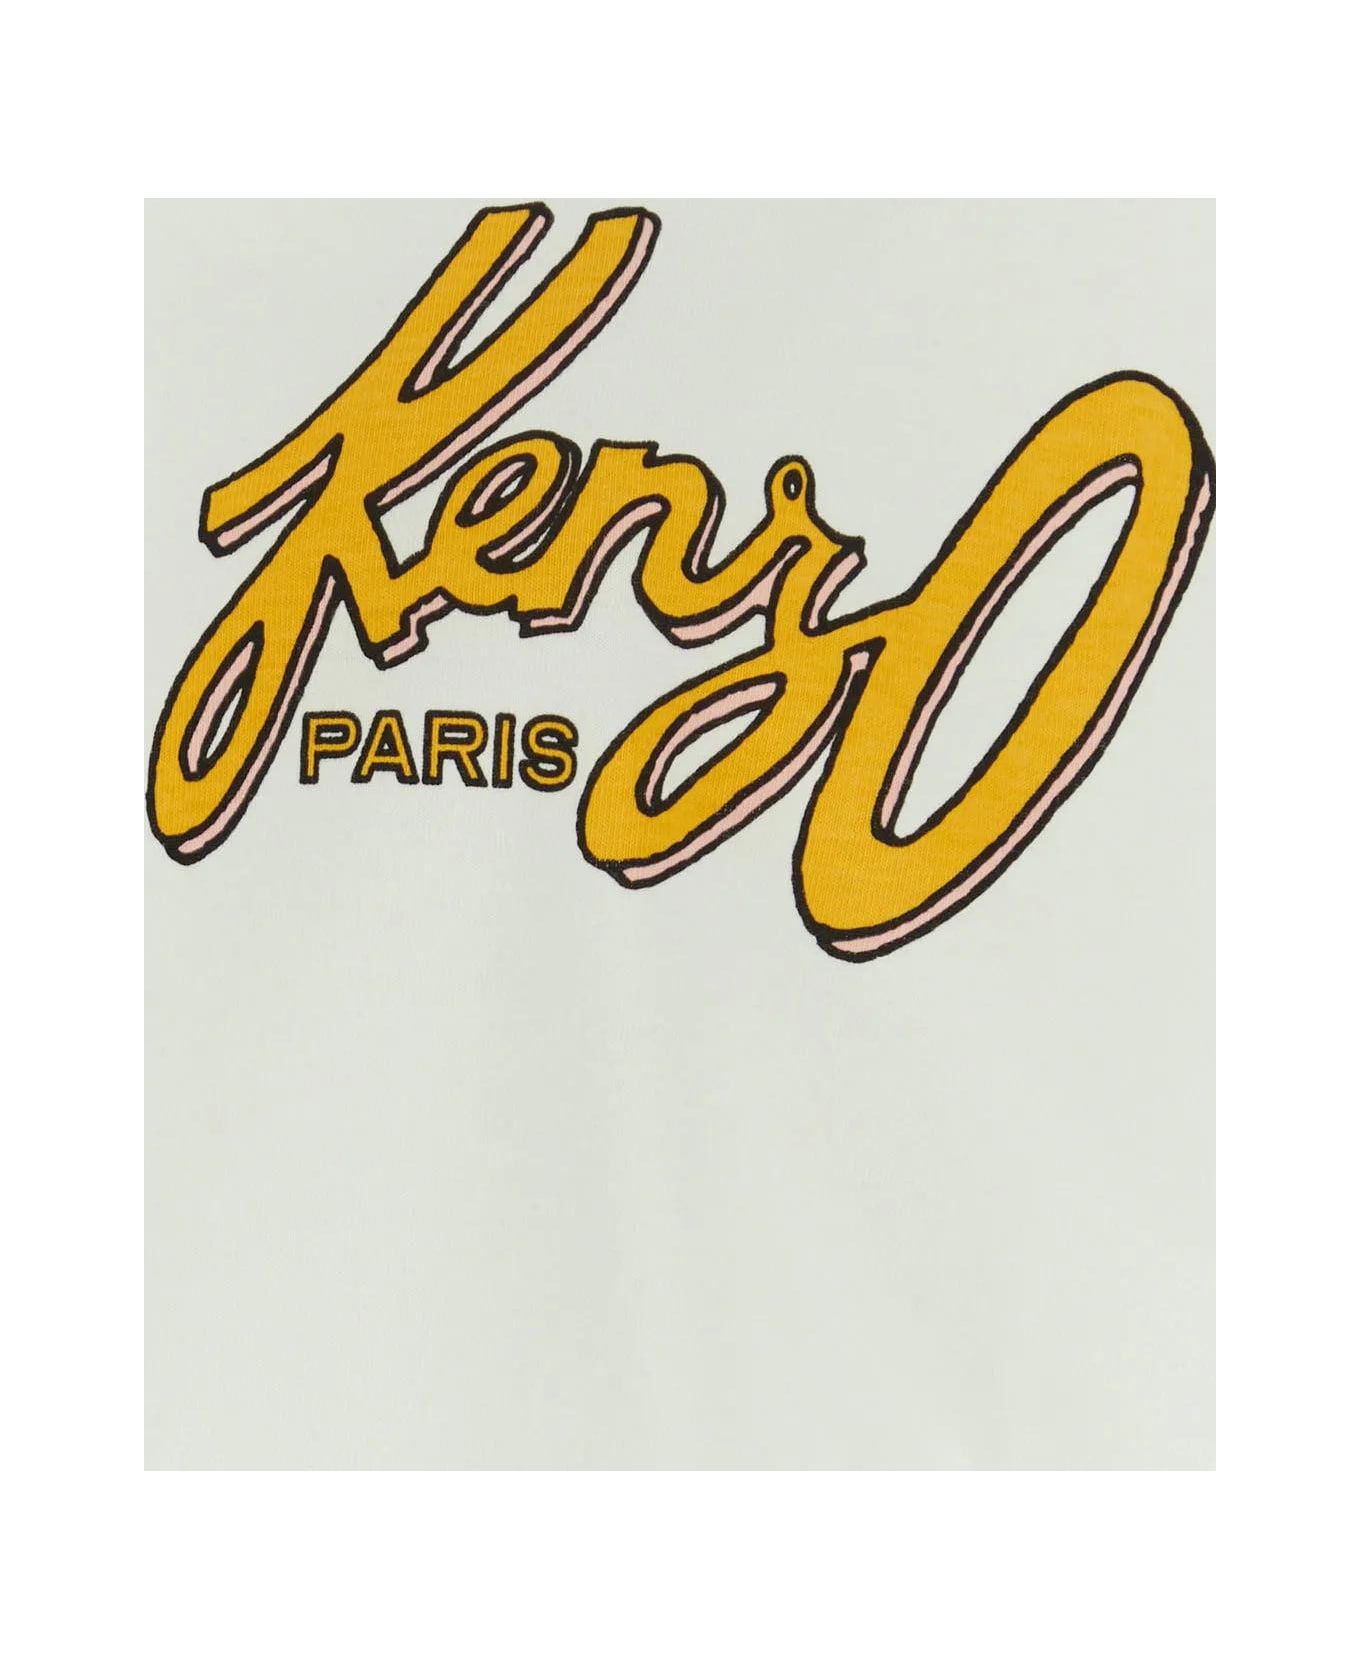 Kenzo Cotton T-shirt